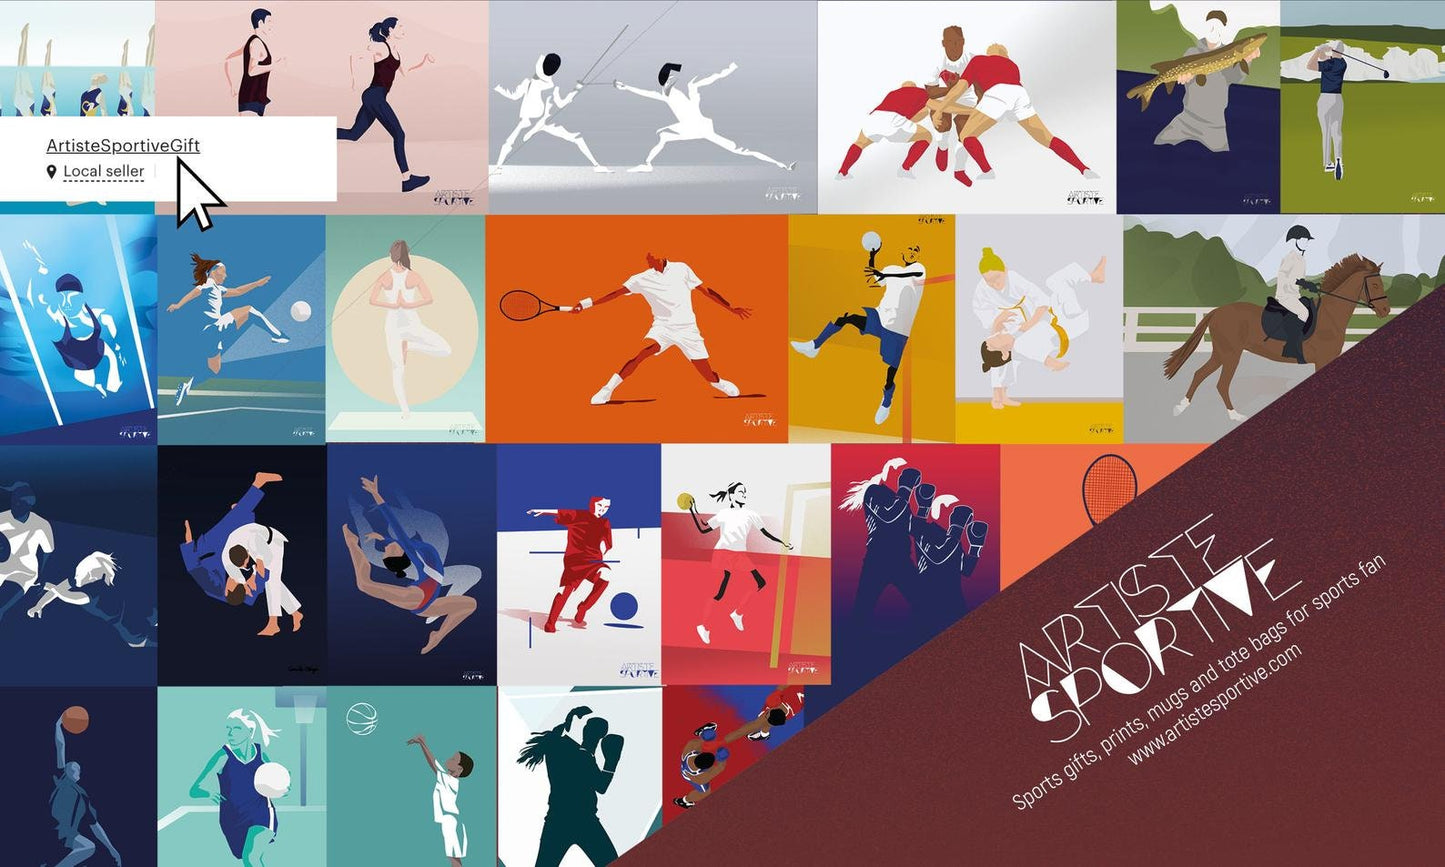 Poster „Badmintonspieler“